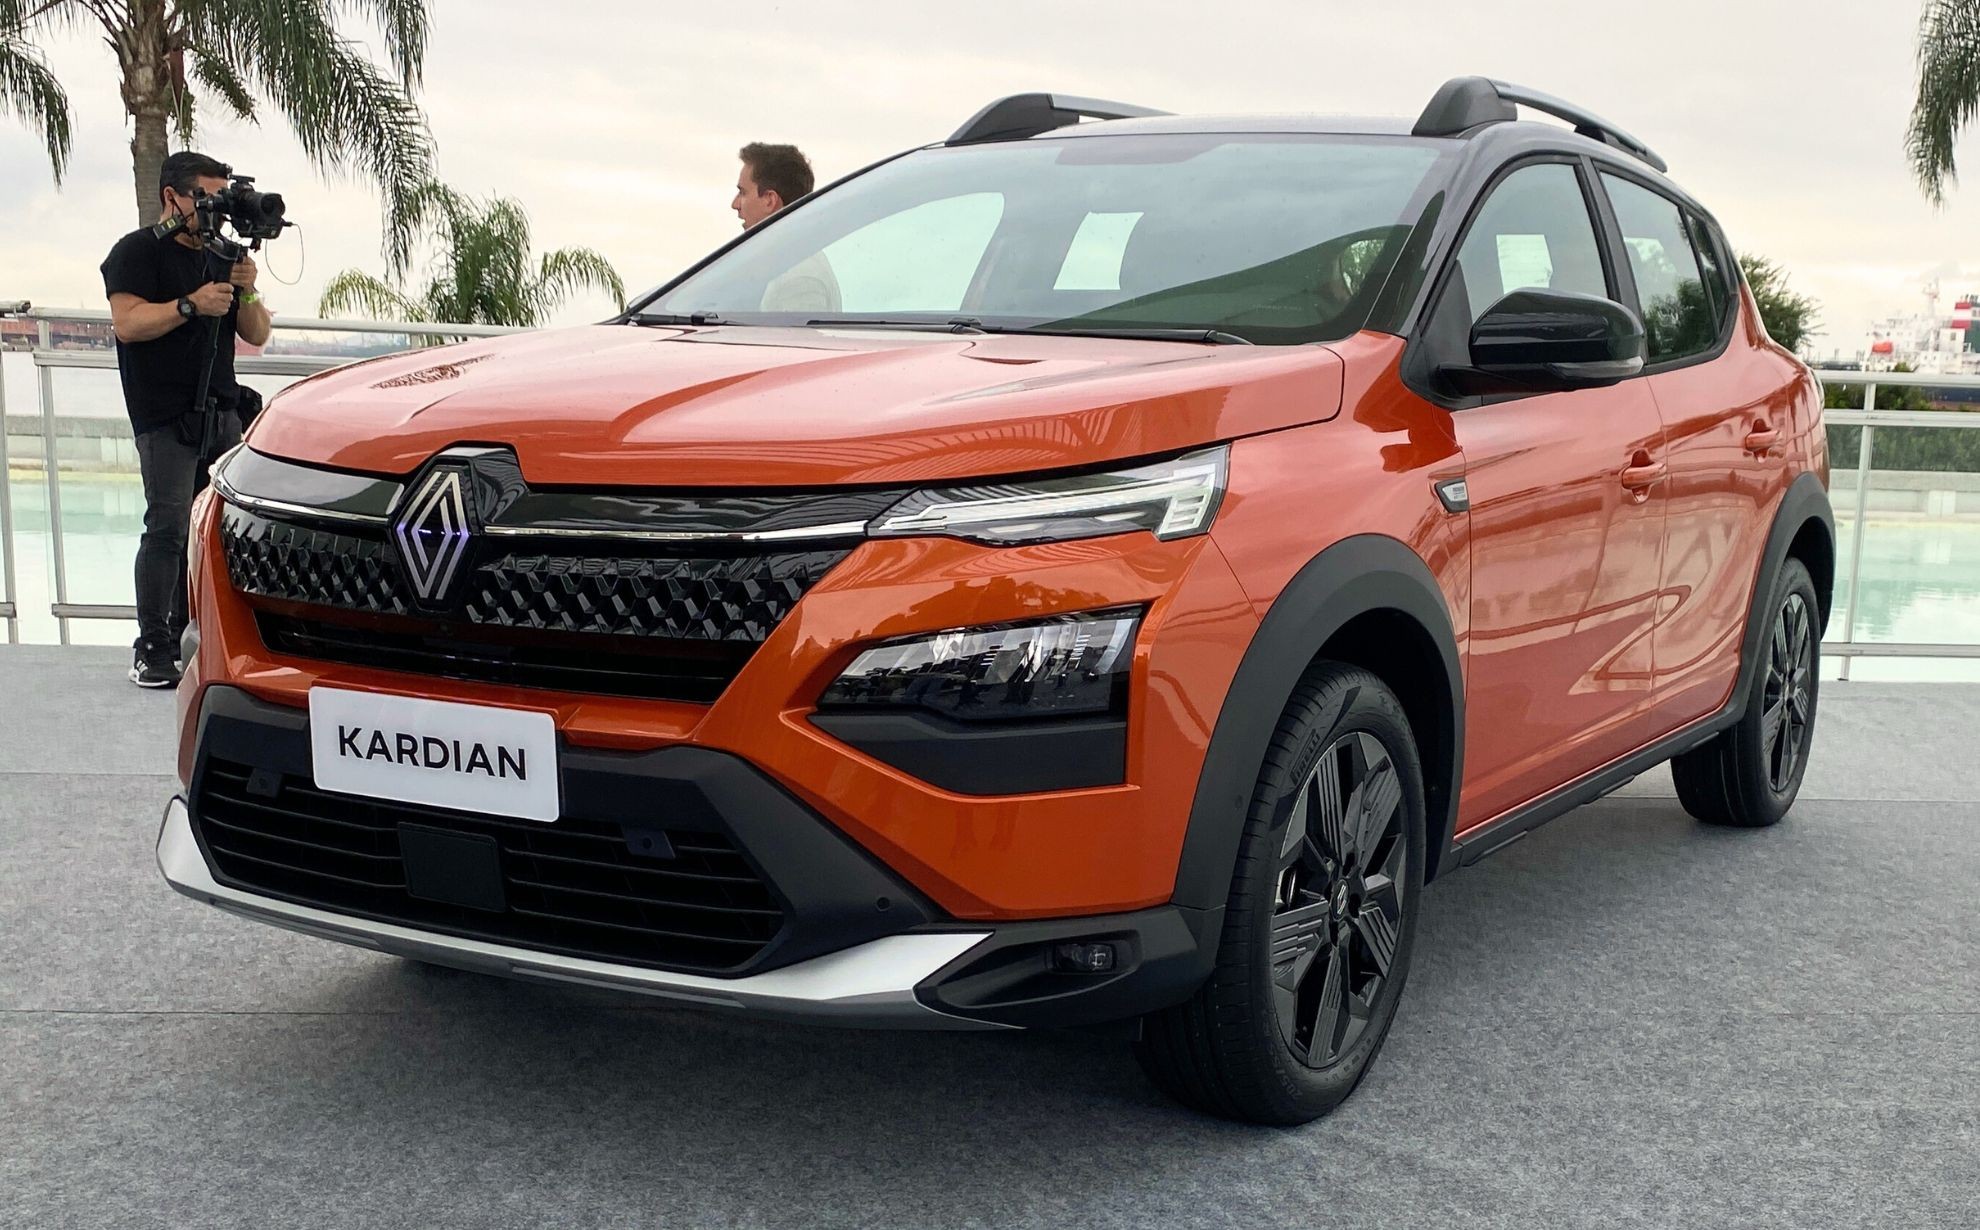 Novo Renault Kardian será vendido em quatro versões no Brasil; veja quais são